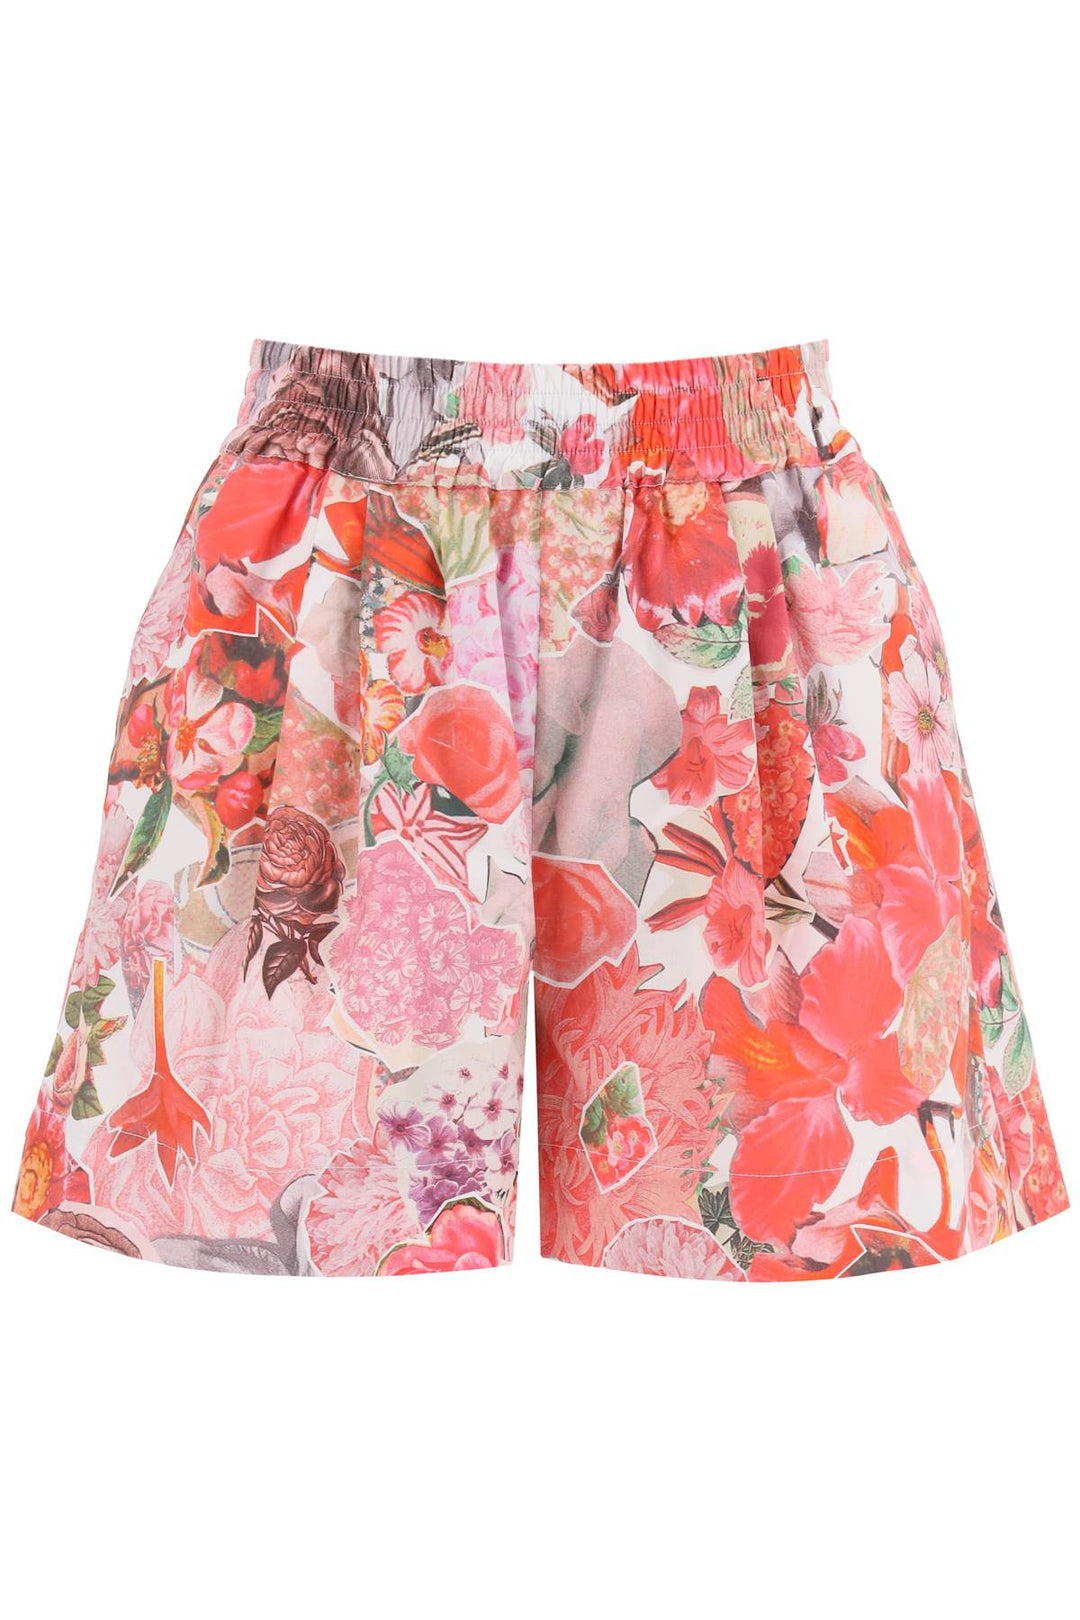 Marni Floral Print Shorts   Rosa